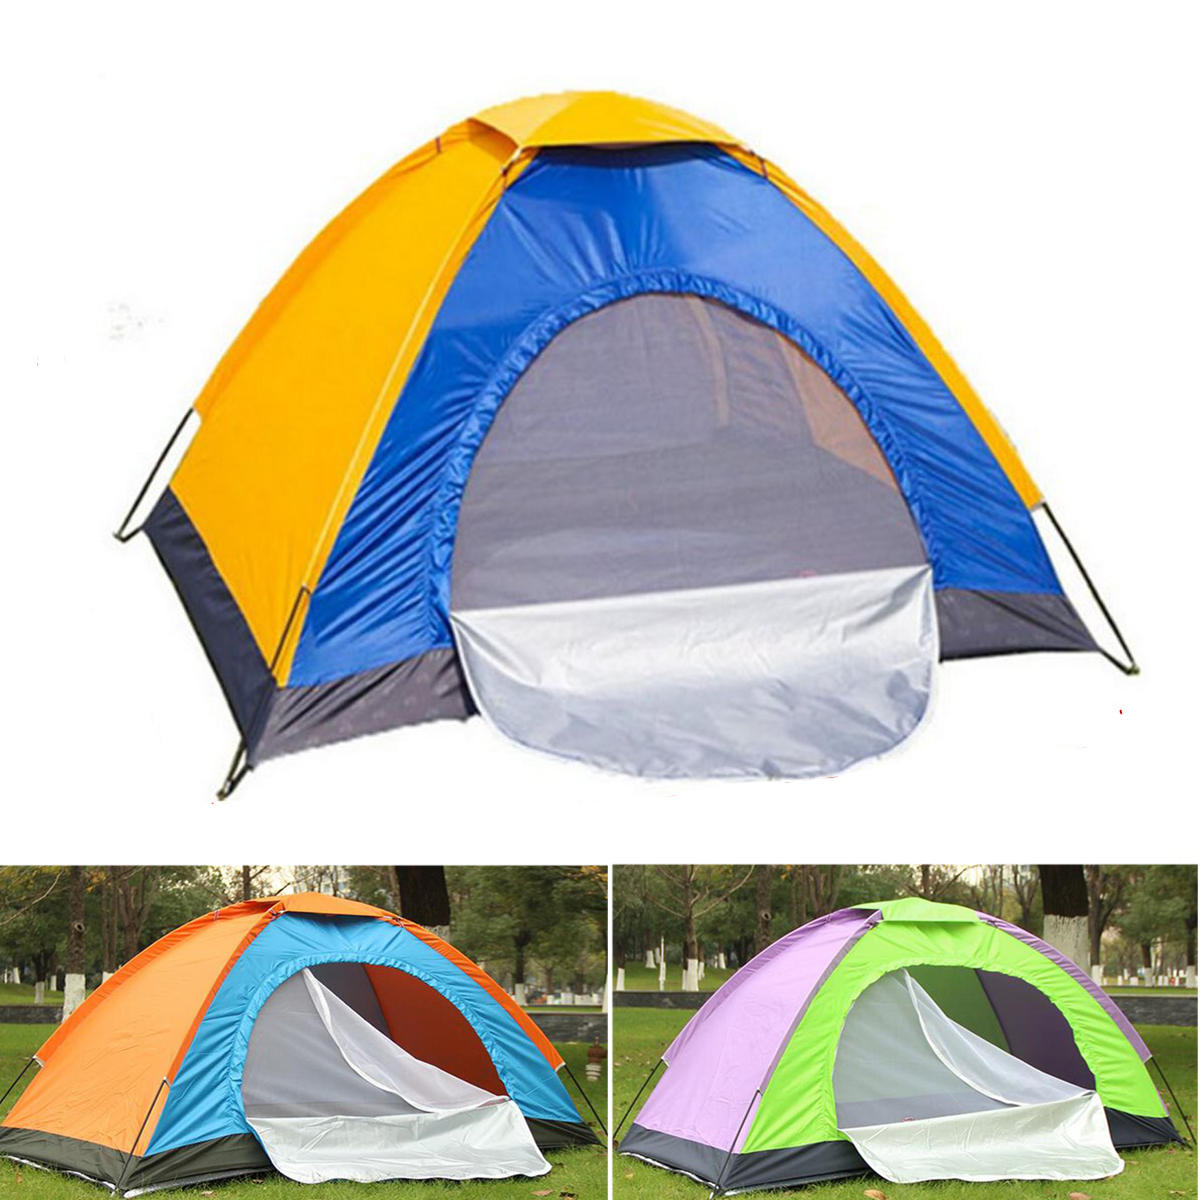 Tenda individual portátil para camping ao ar livre, à prova d'água, abrigo contra o sol na praia